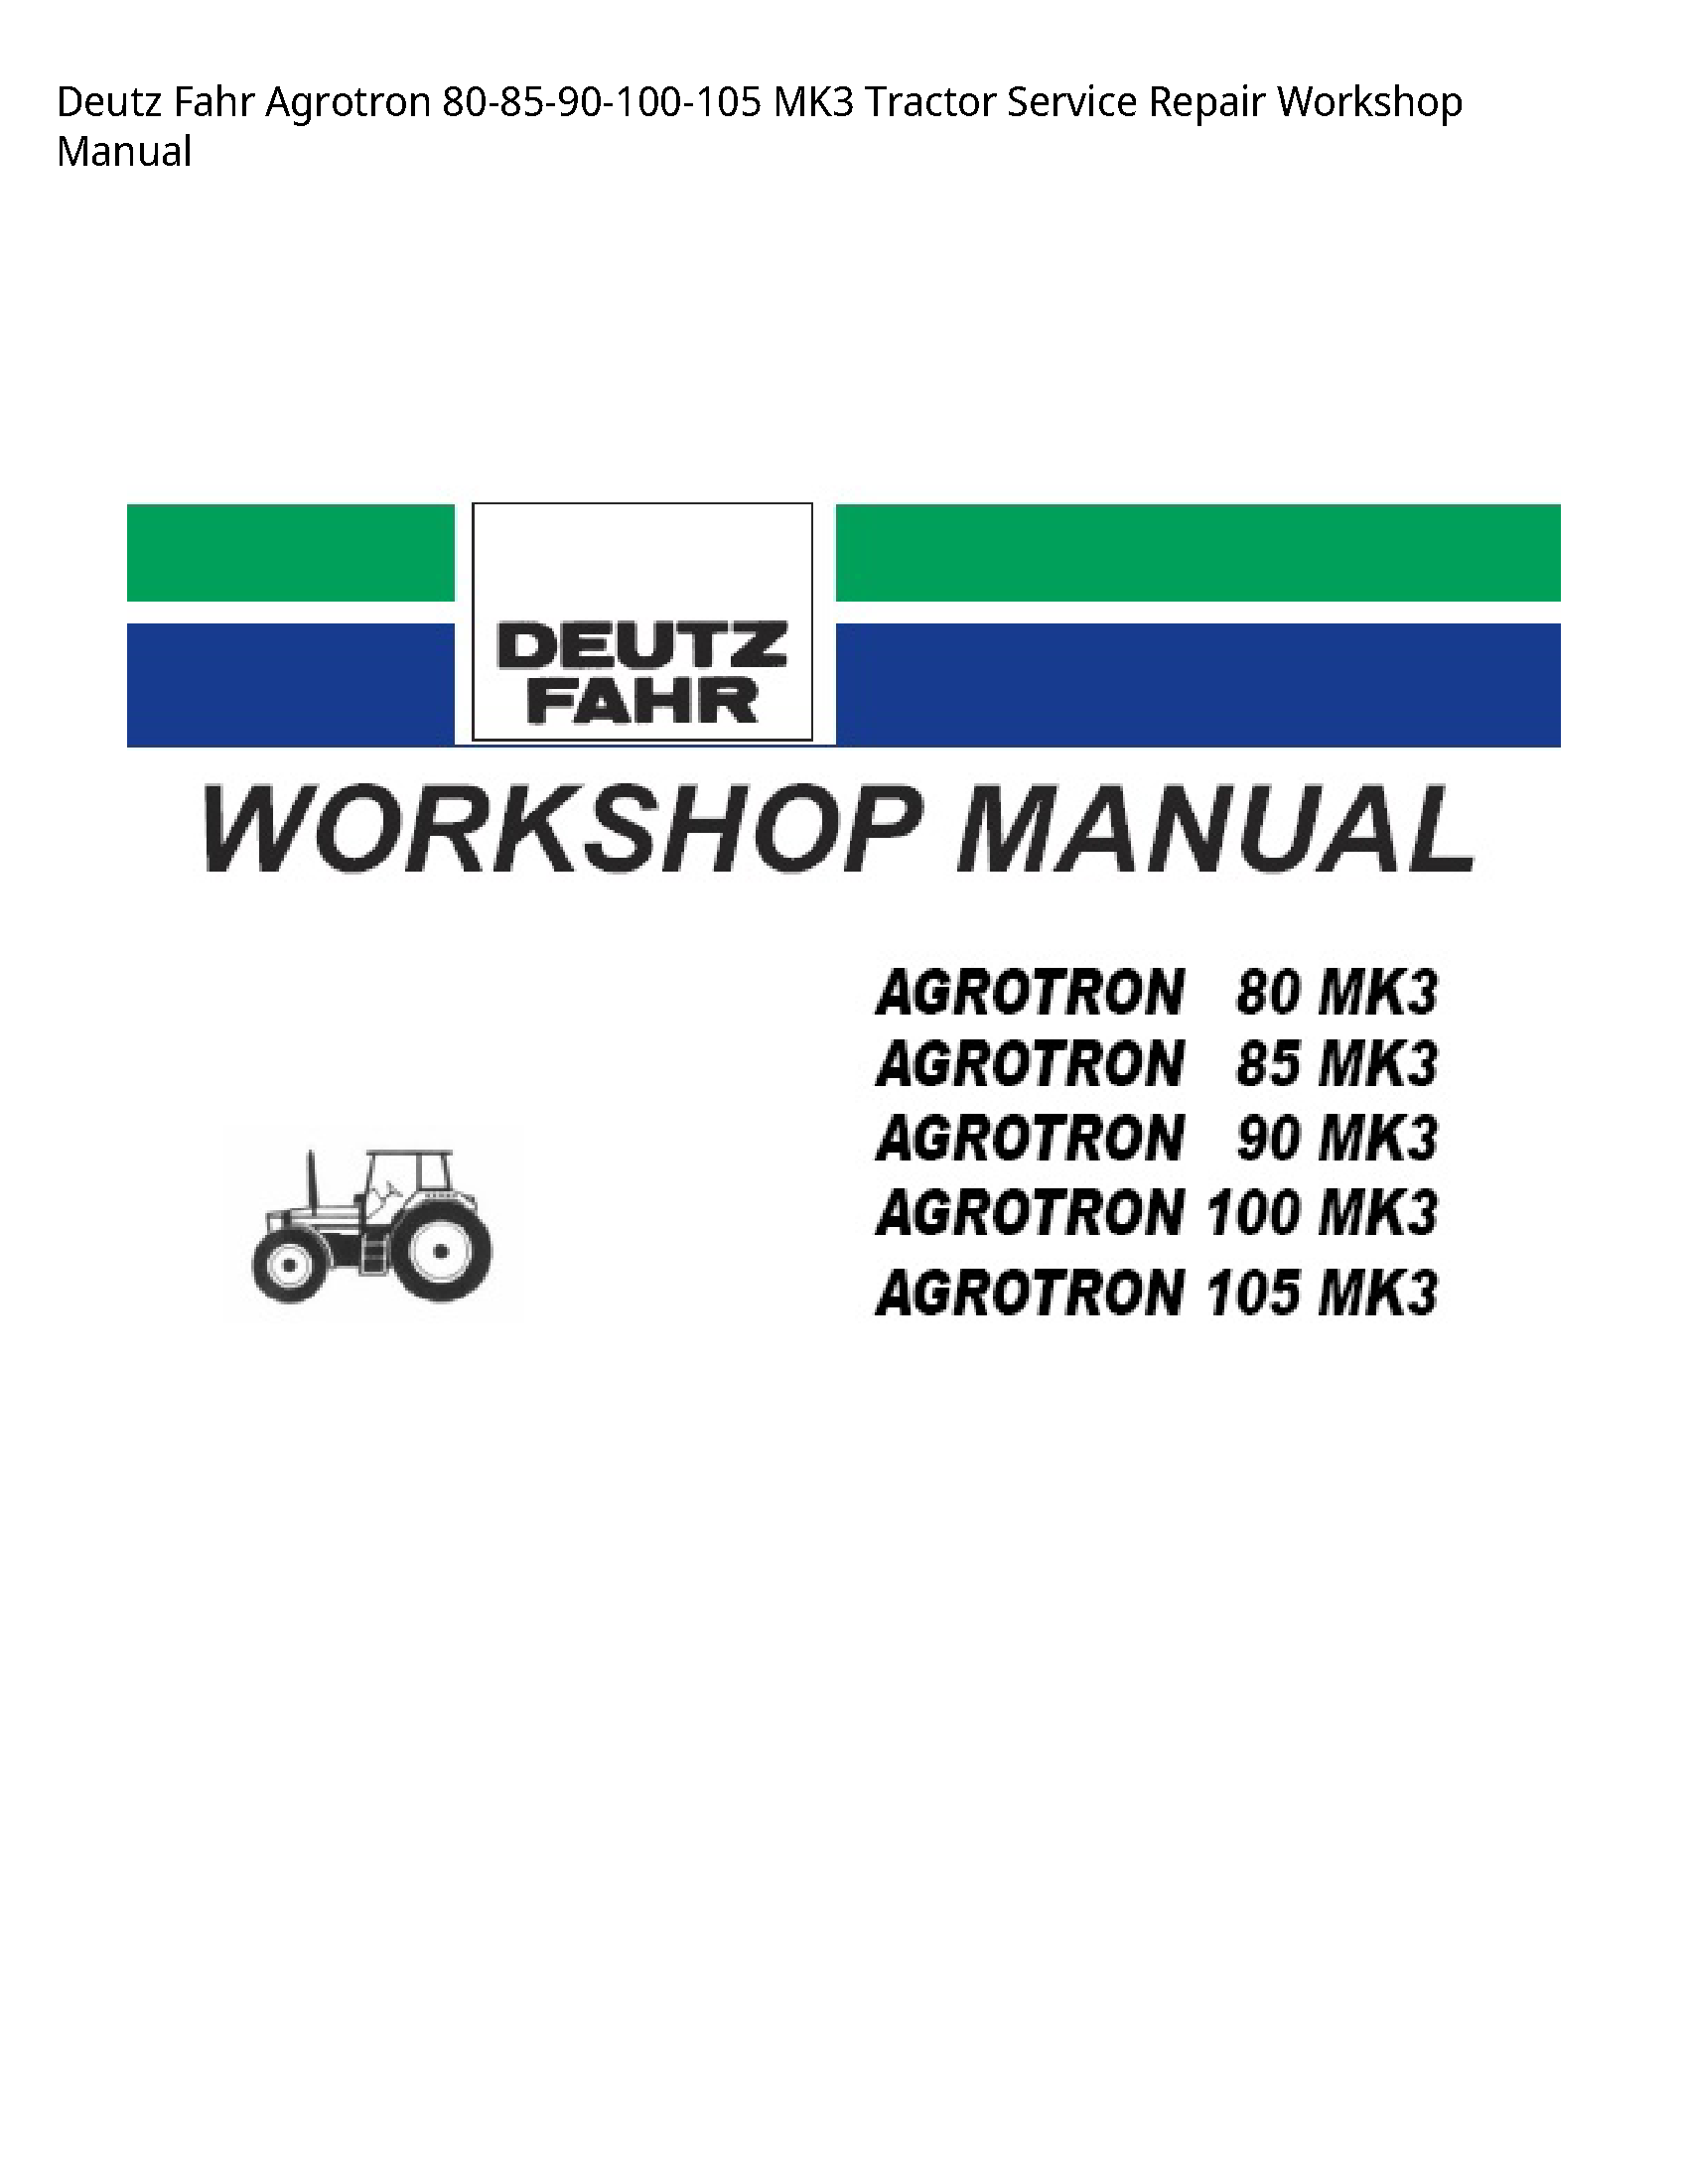 Deutz 80-85-90-100-105 Fahr Agrotron Tractor manual